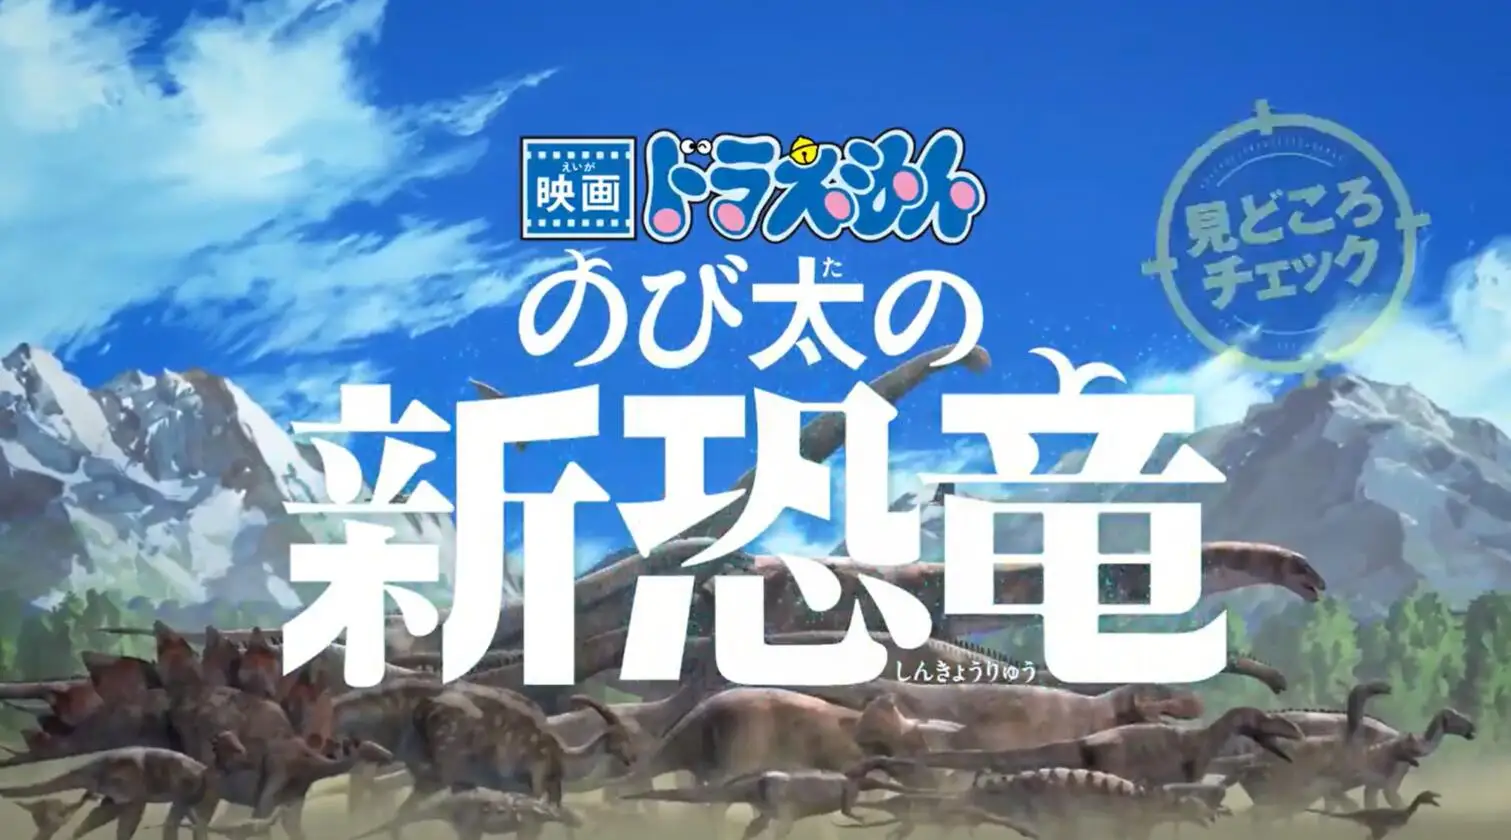 剧场版《哆啦A梦 大雄的新恐龙》特别视频公布，8月7日上映